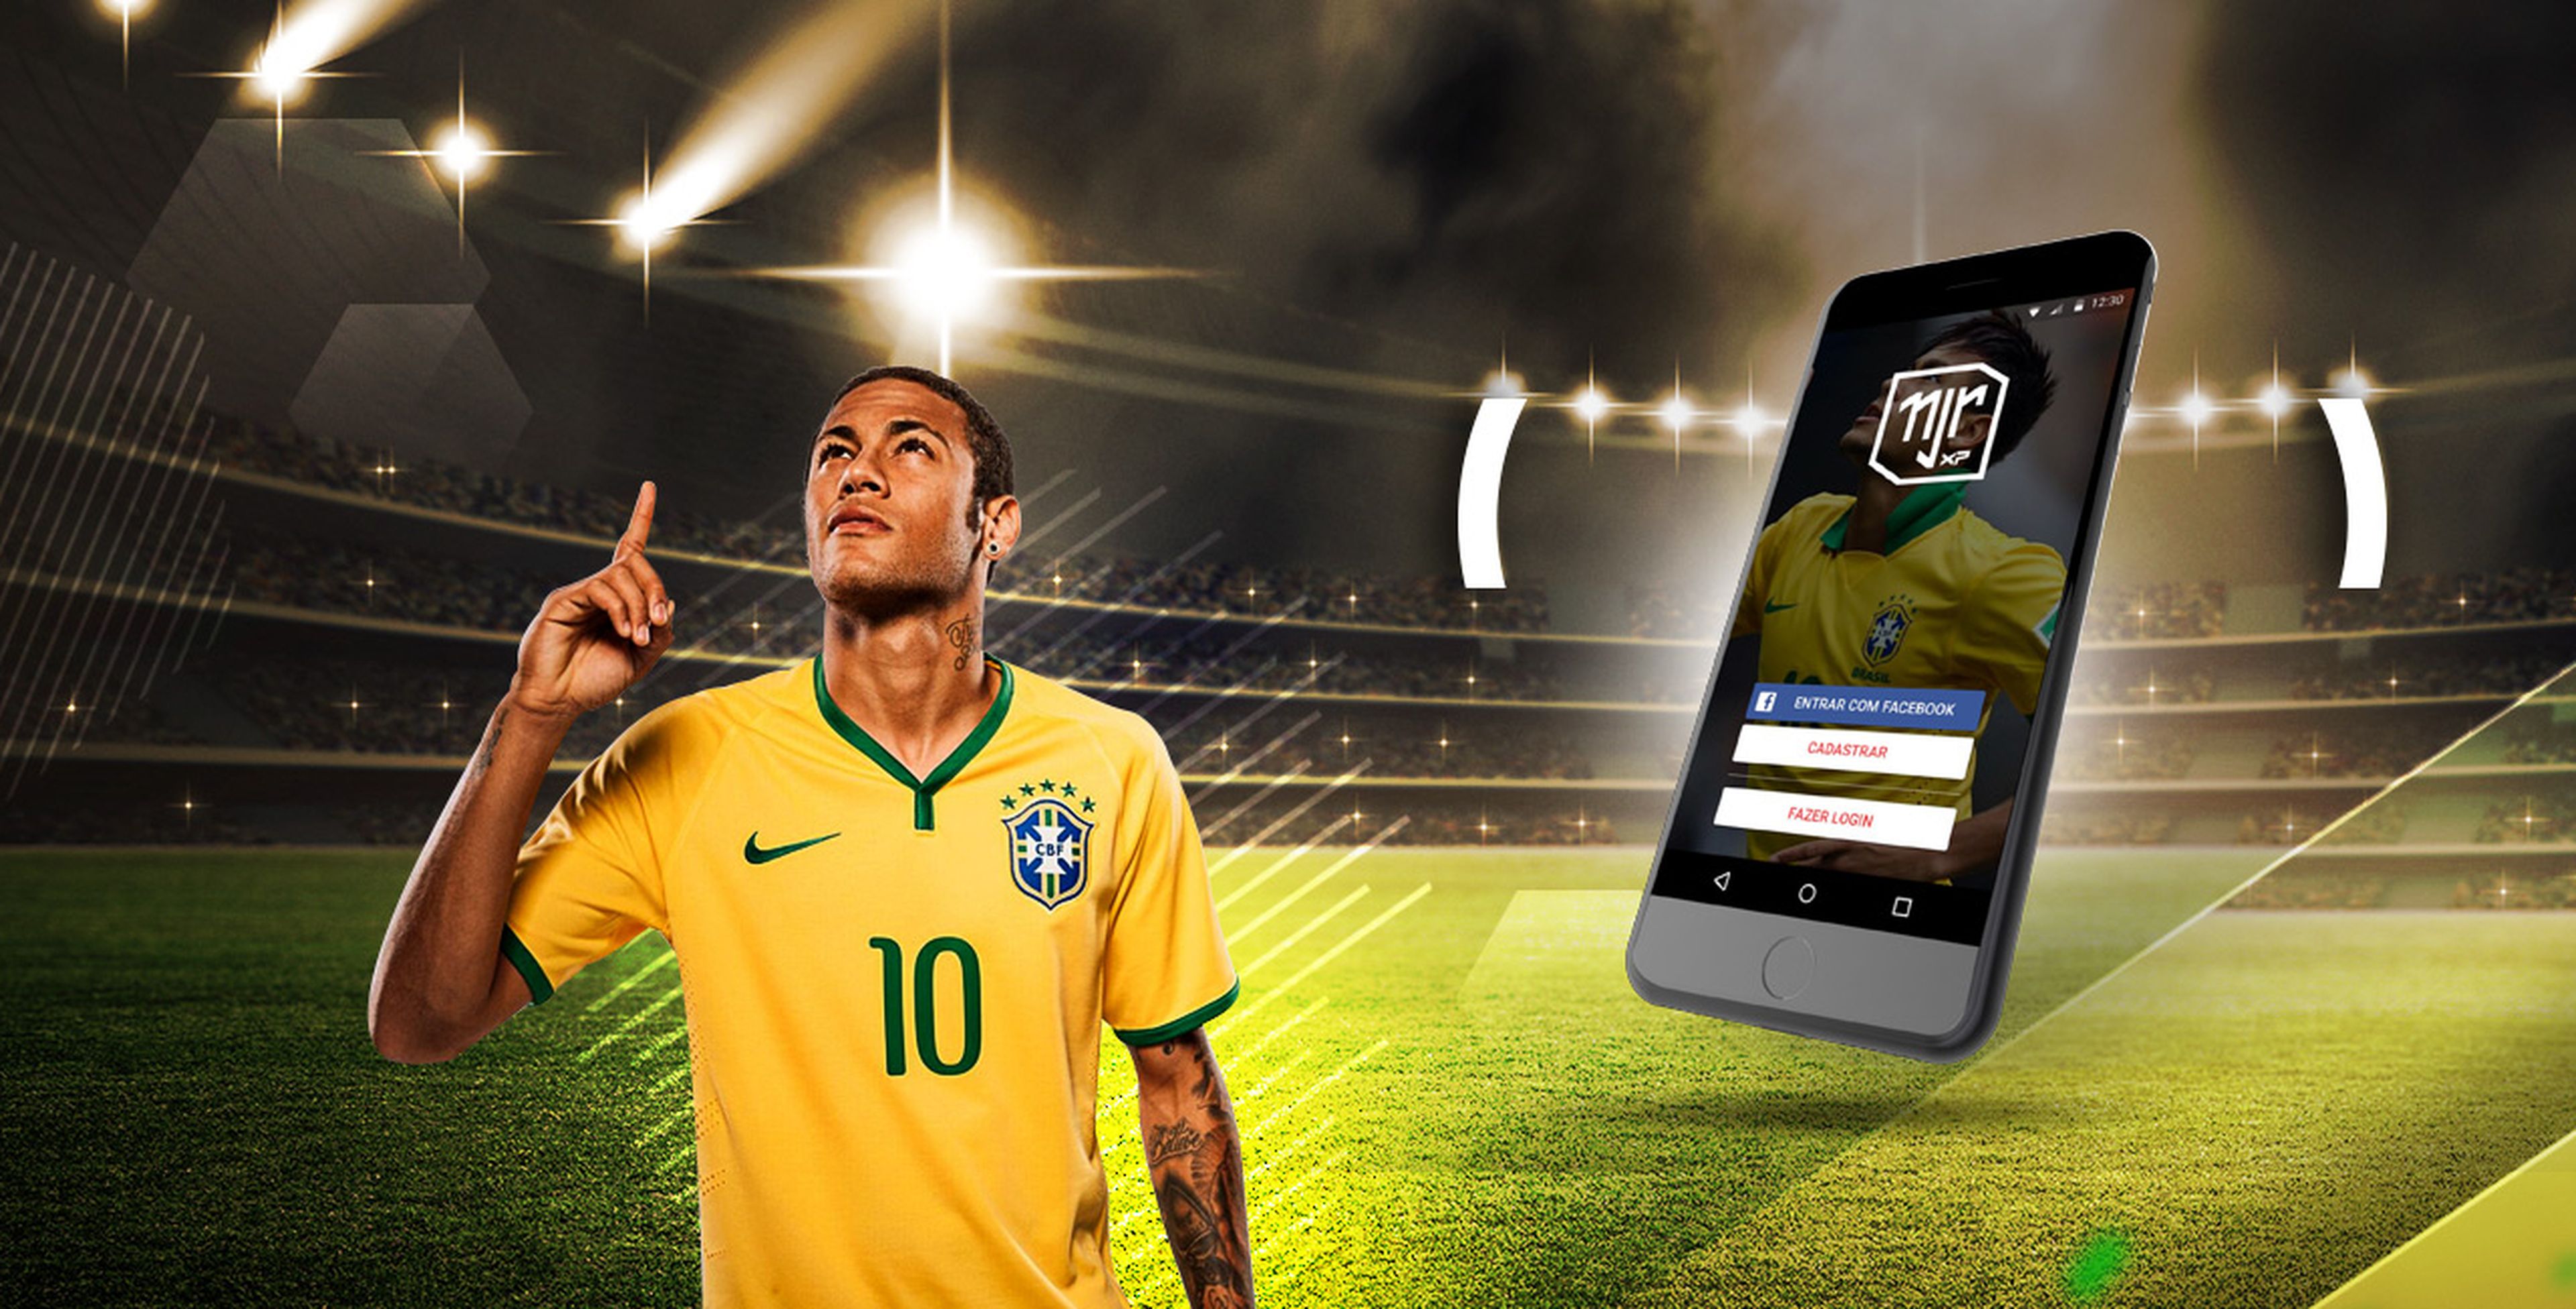 Anuncio de la aplicación Neymar Experience, de Digible-